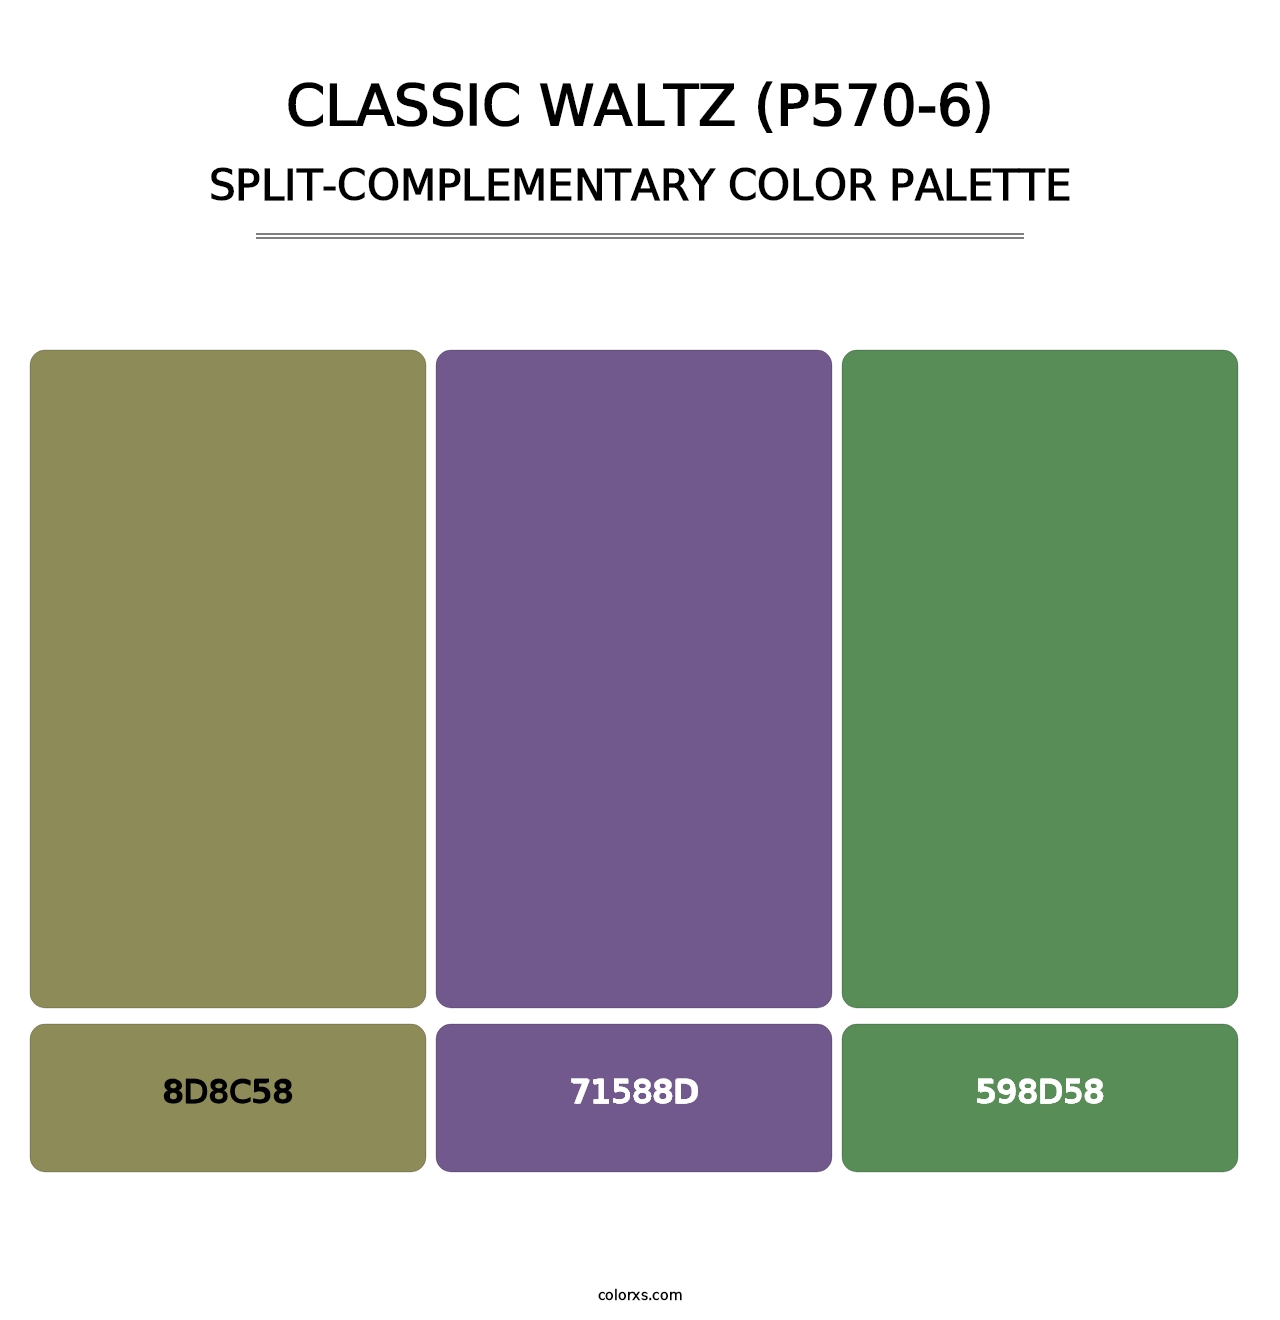 Classic Waltz (P570-6) - Split-Complementary Color Palette